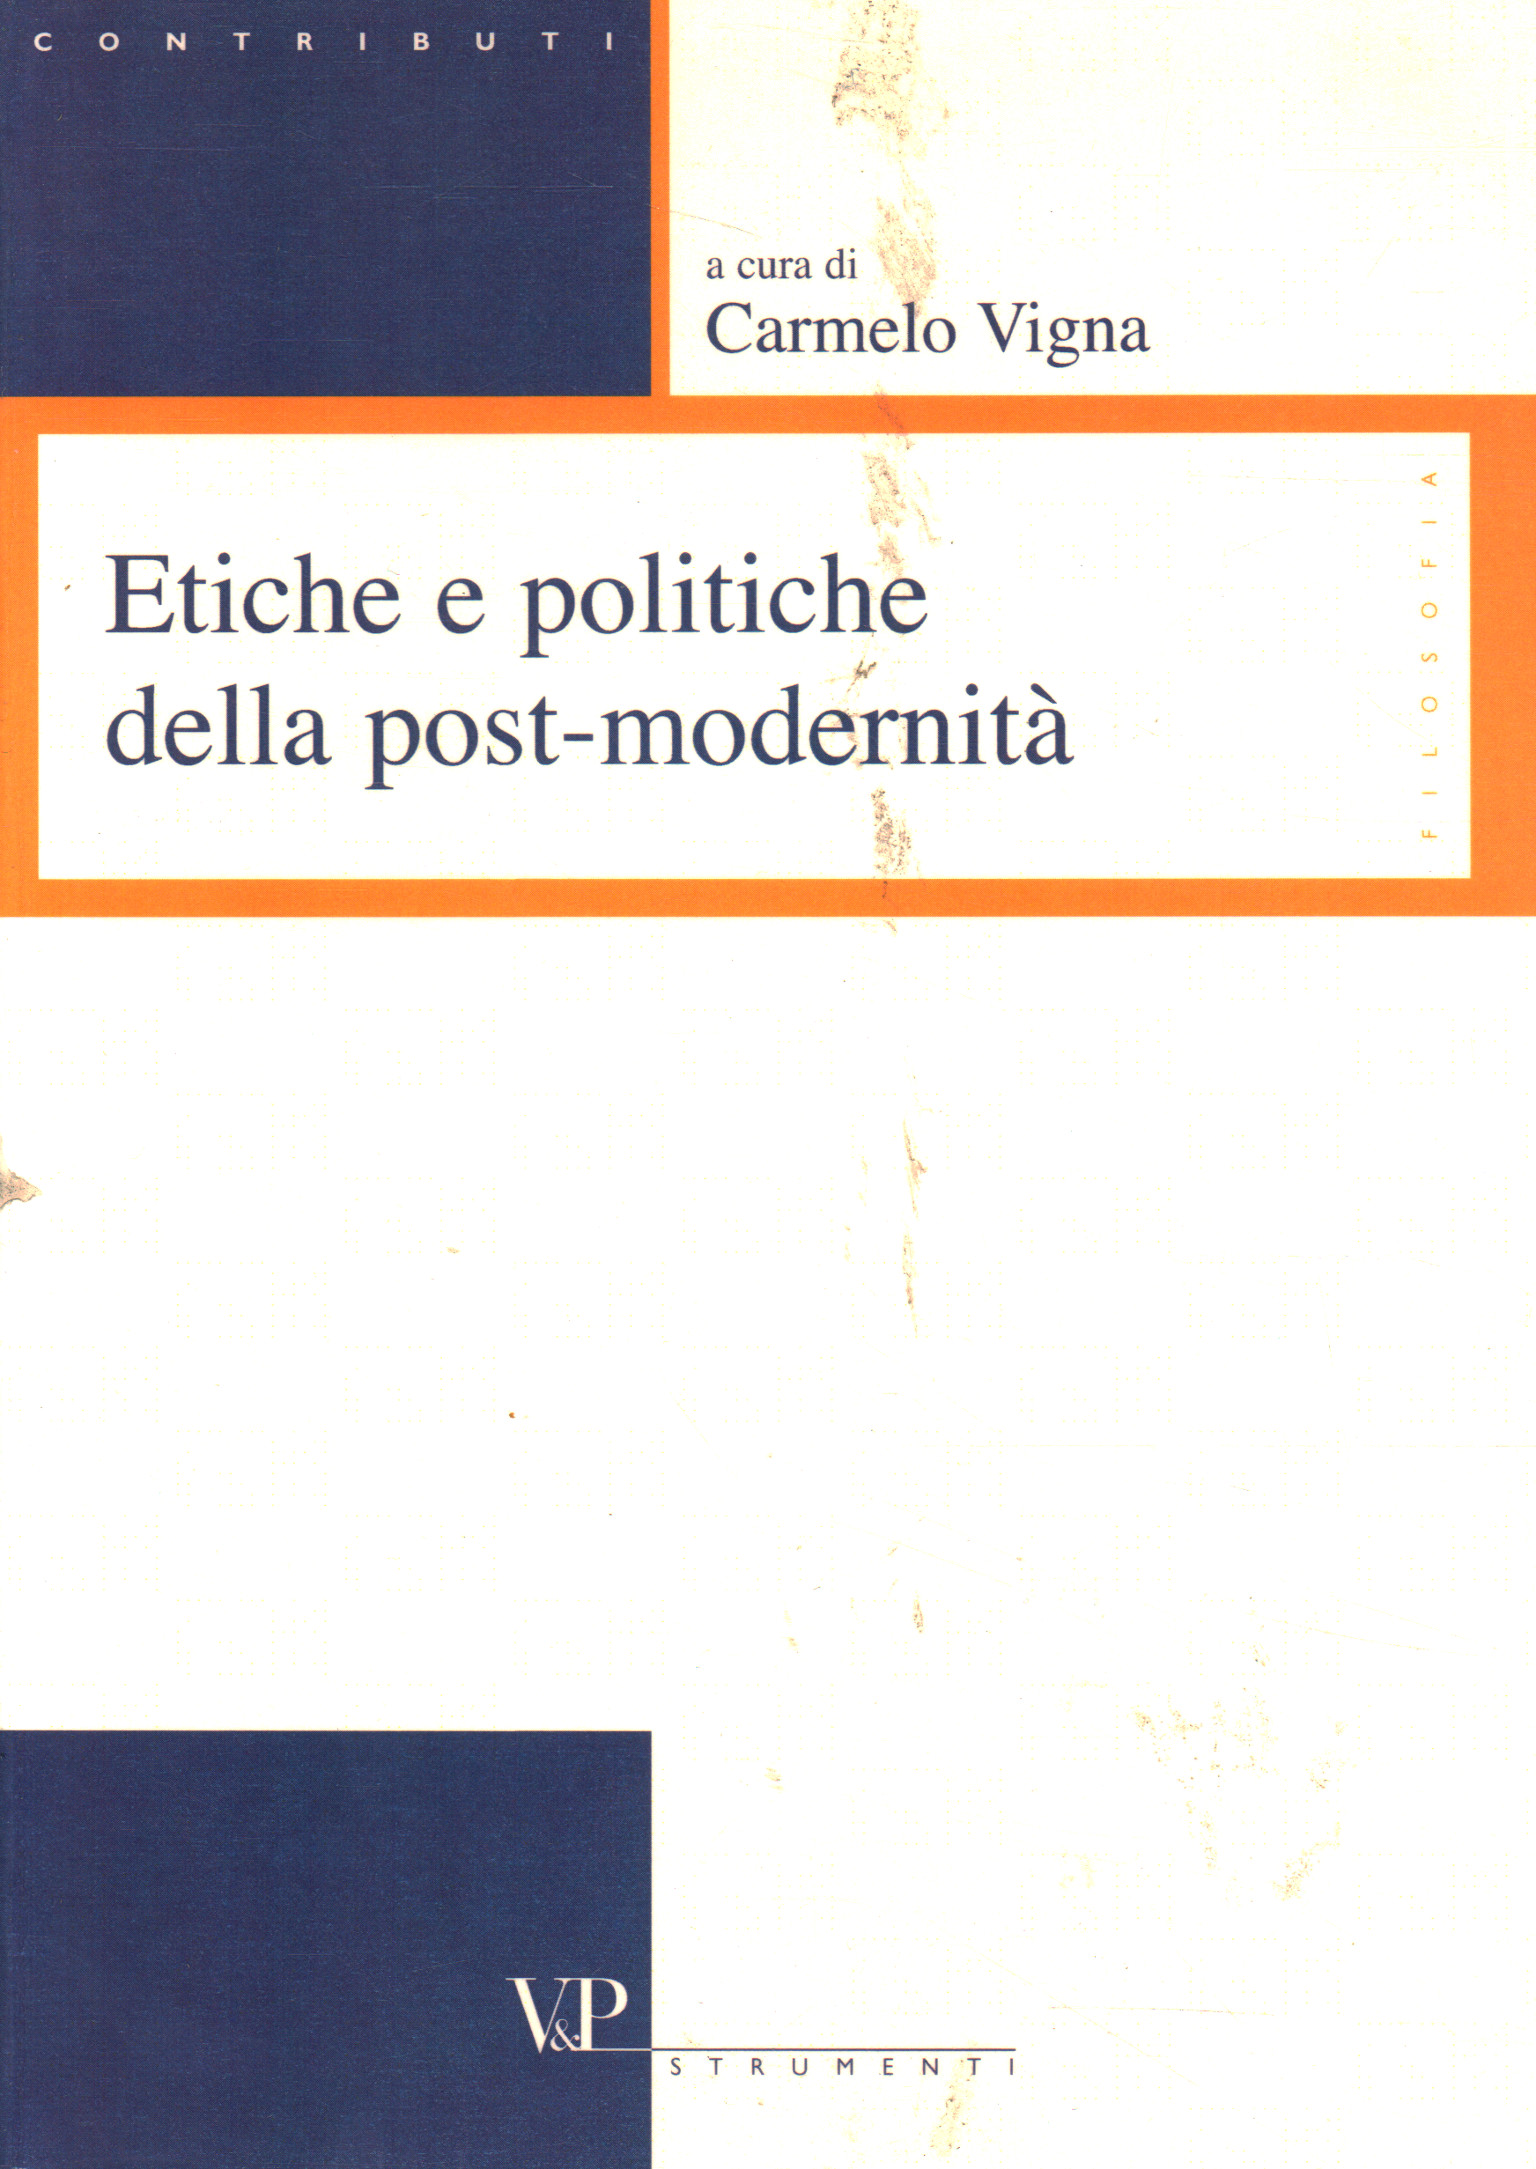 Etiche e politiche della post-modernit,Etiche e politiche della post-modernit,Etiche e politiche della post-modernit